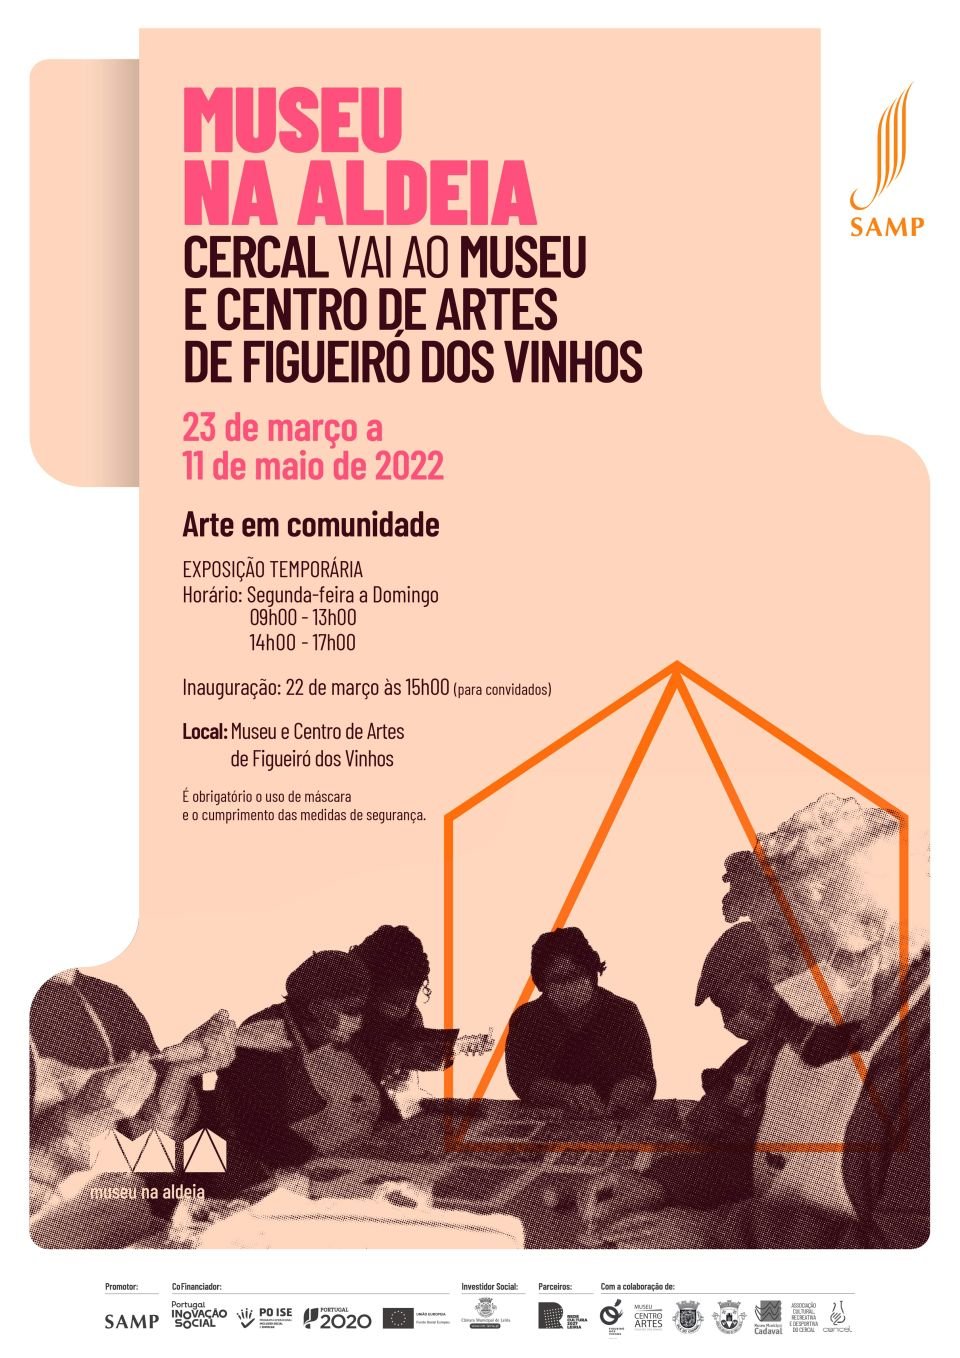 Museu na Aldeia - Cercal vai ao Museu e Centro de Artes de Figueiró dos Vinhos